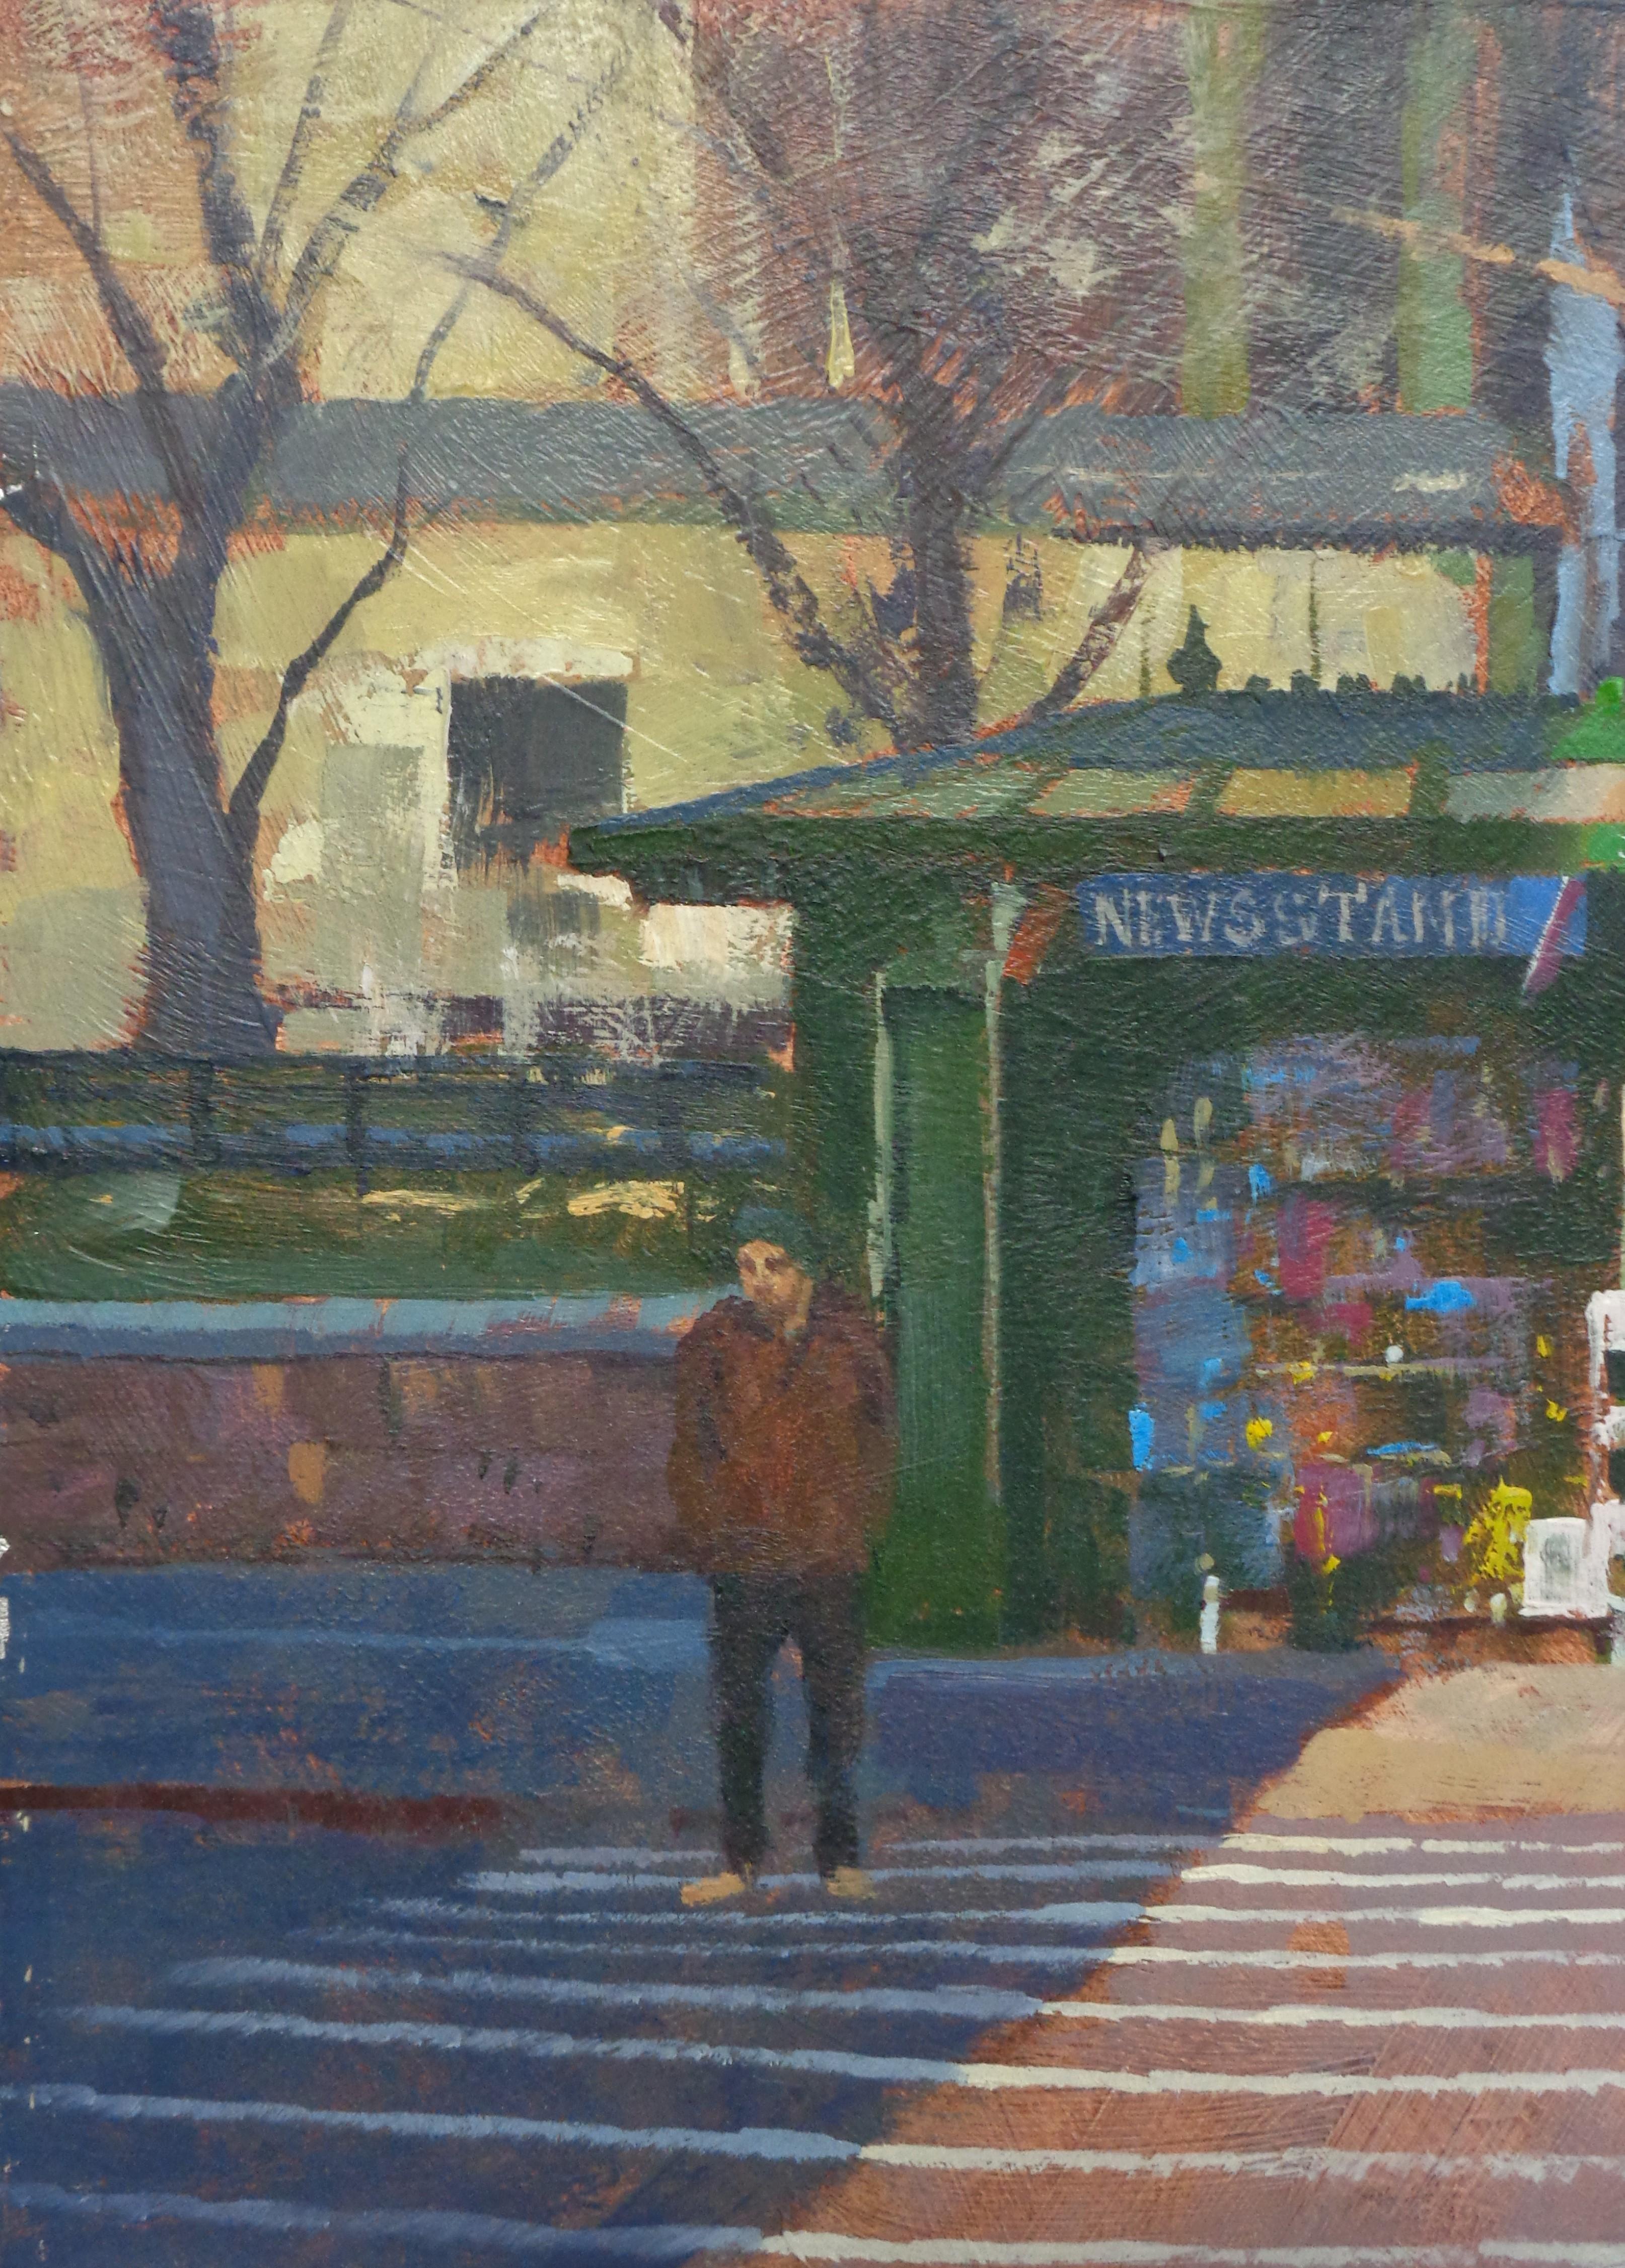  Peinture de rue de la ville de New York - Paul Bachem News Stand - Impressionnisme Painting par Michael Budden